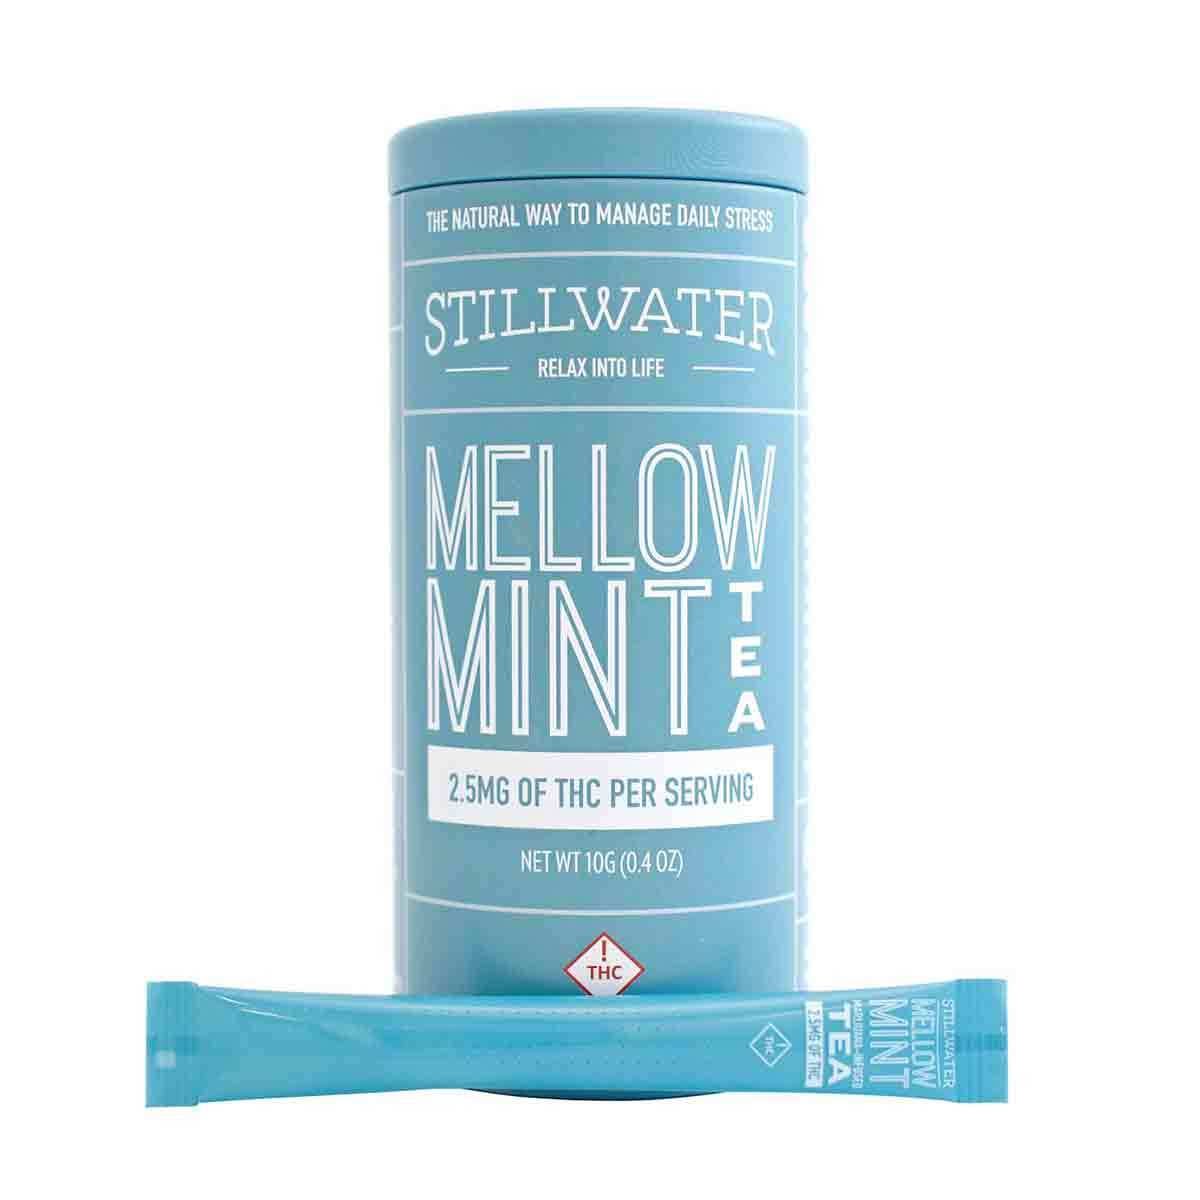 Stillwater Mellow Mint, 2.5mg